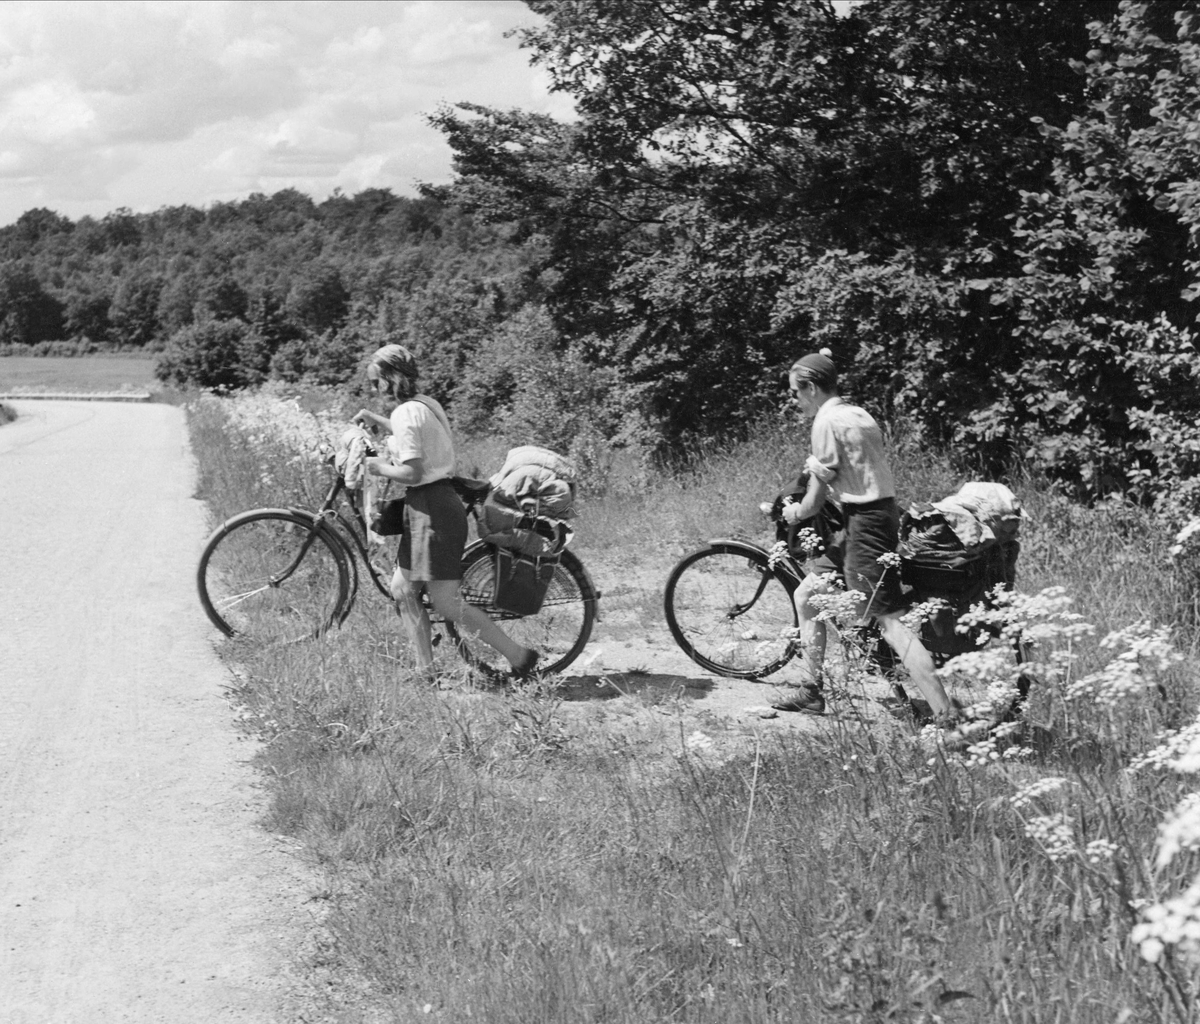 Två cyklister i skogslandskap, ung kvinna och ung man, leder cyklar med stor packning från vägkanten och ut på en grusväg.